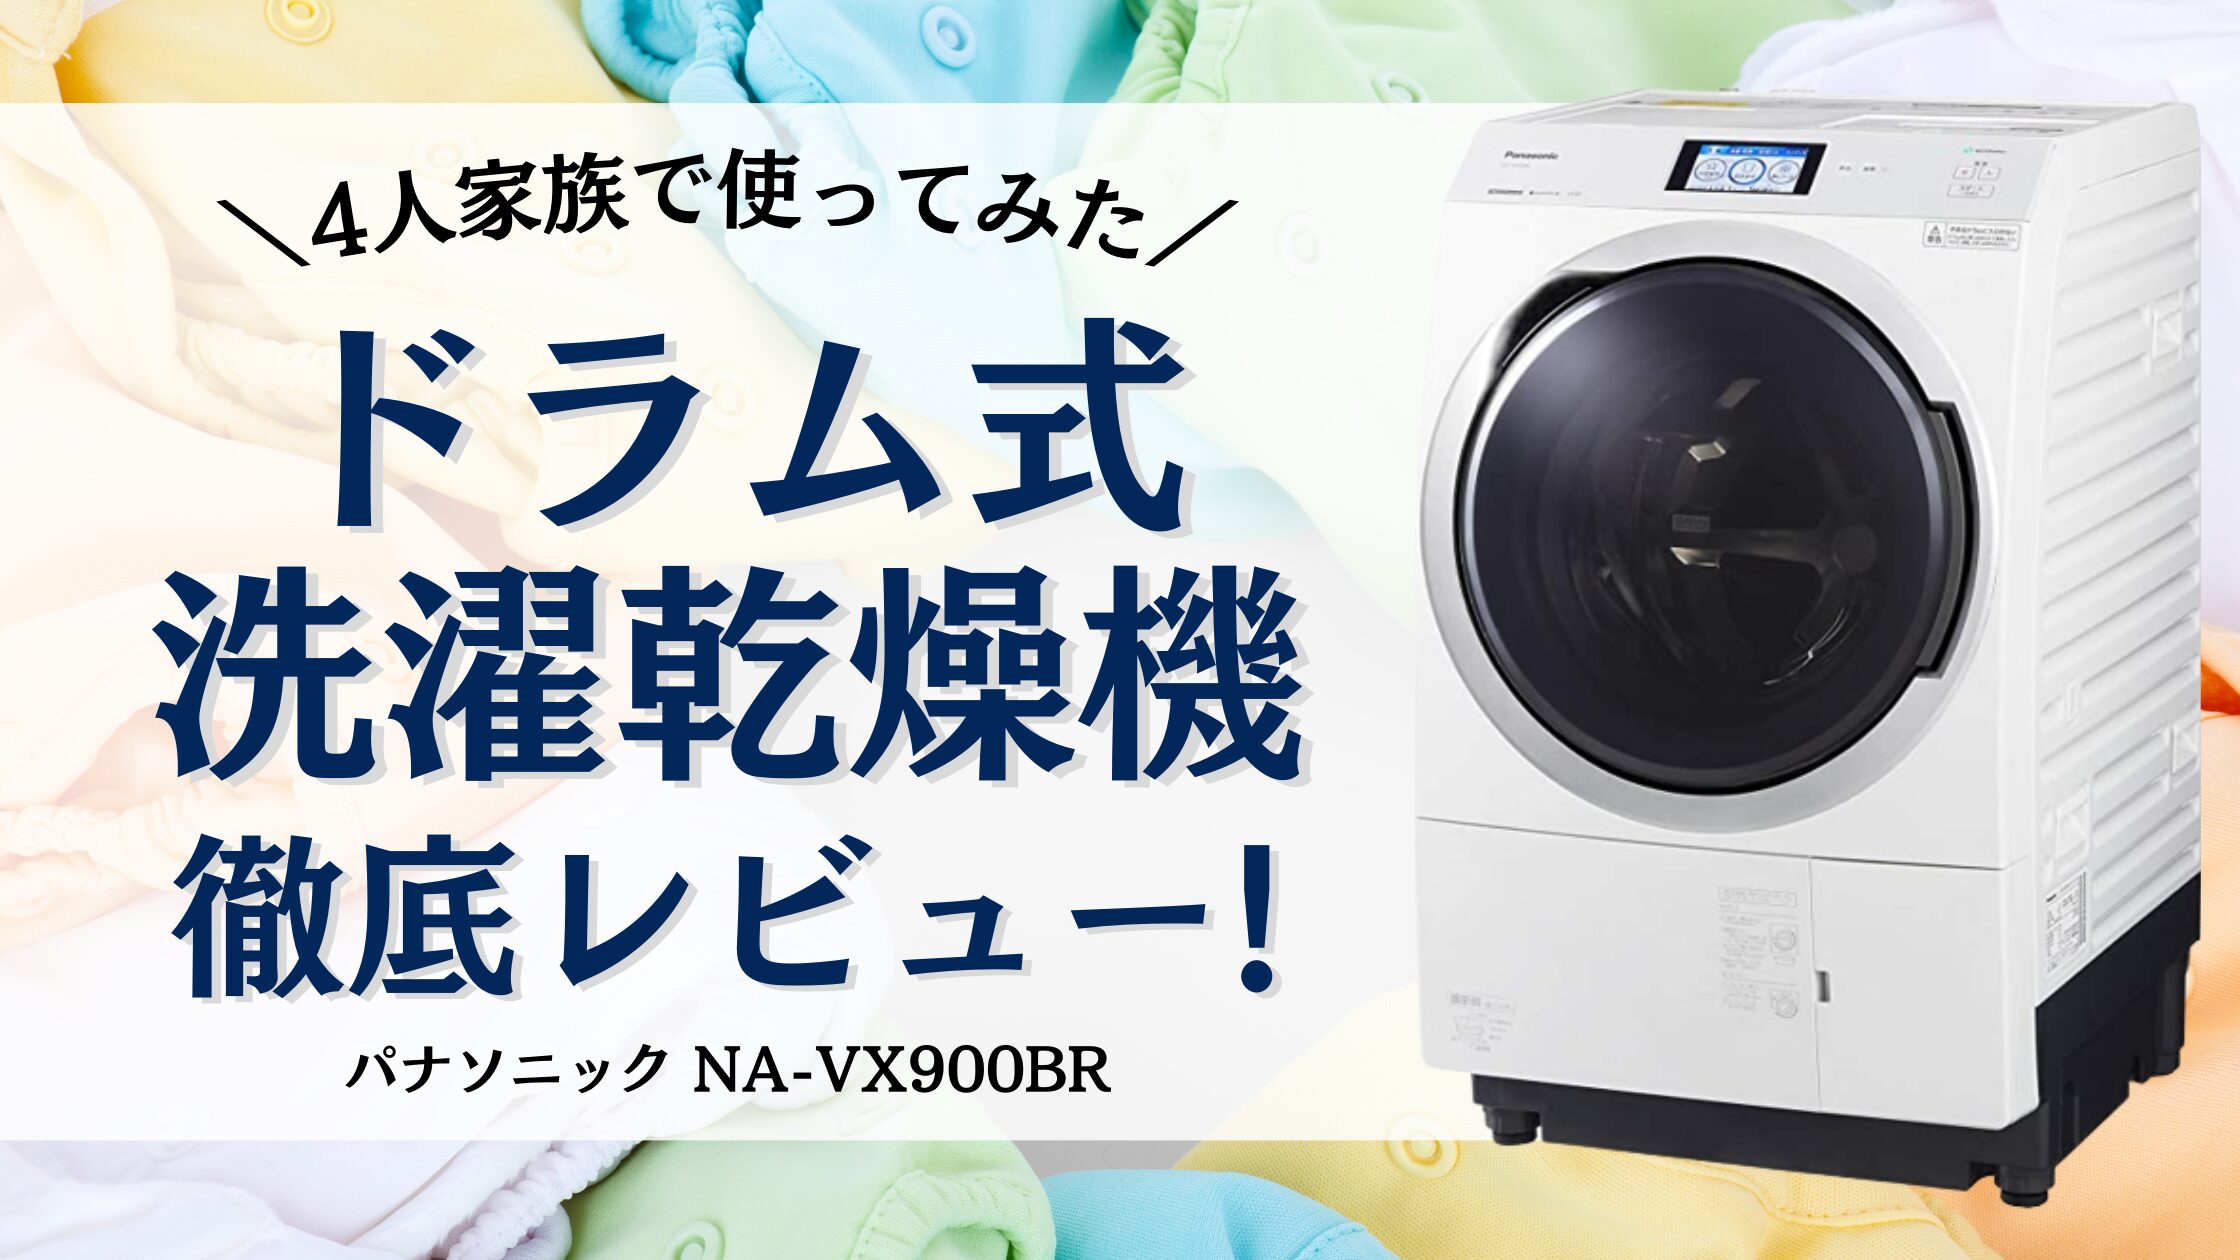 Panasonic(パナソニック)の全自動洗濯機をご紹介します！ - 生活家電